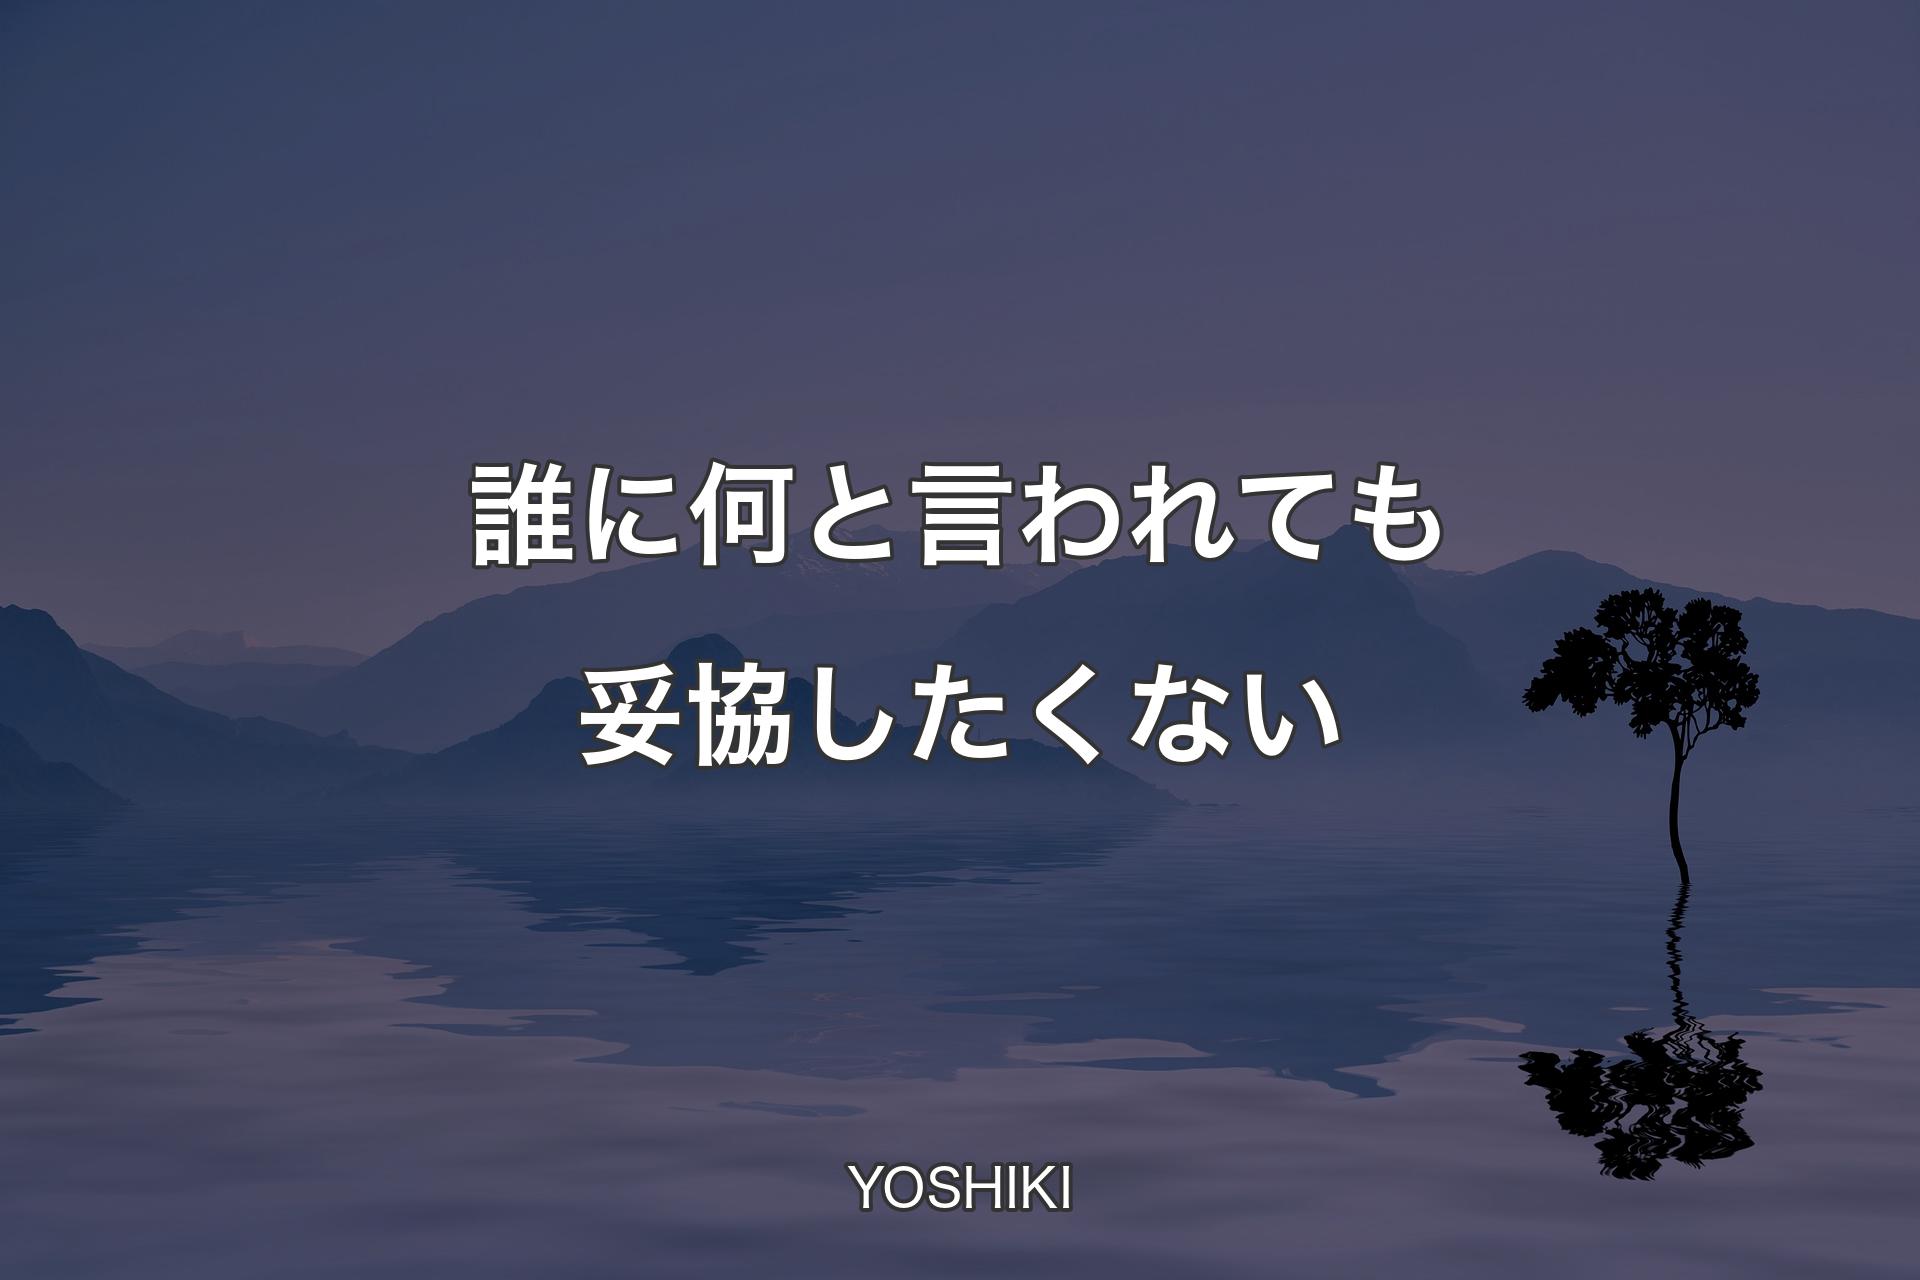 【背景4】誰に何と言われても妥協したくない - YOSHIKI